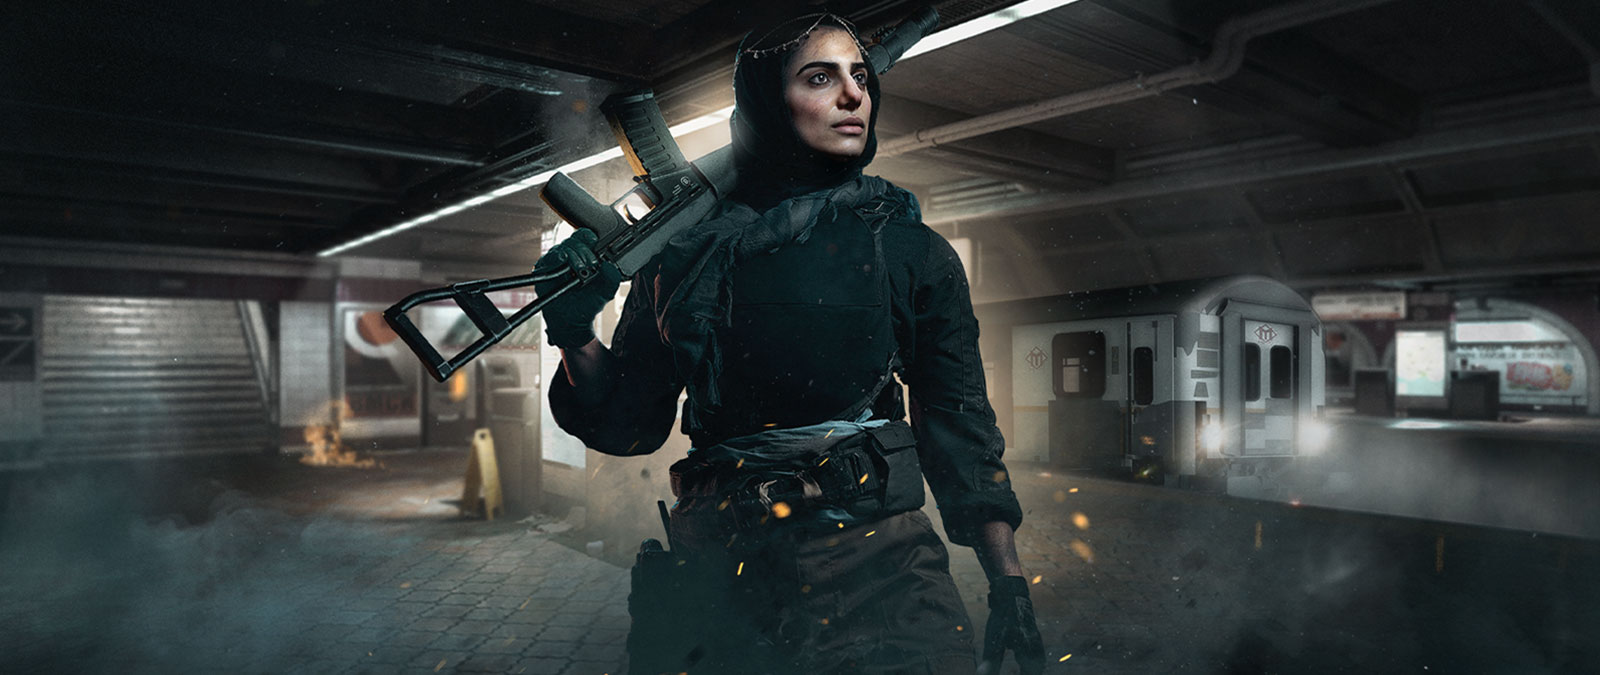 Personage uit Call of Duty: Modern Warfare met een wapen in een metrostation